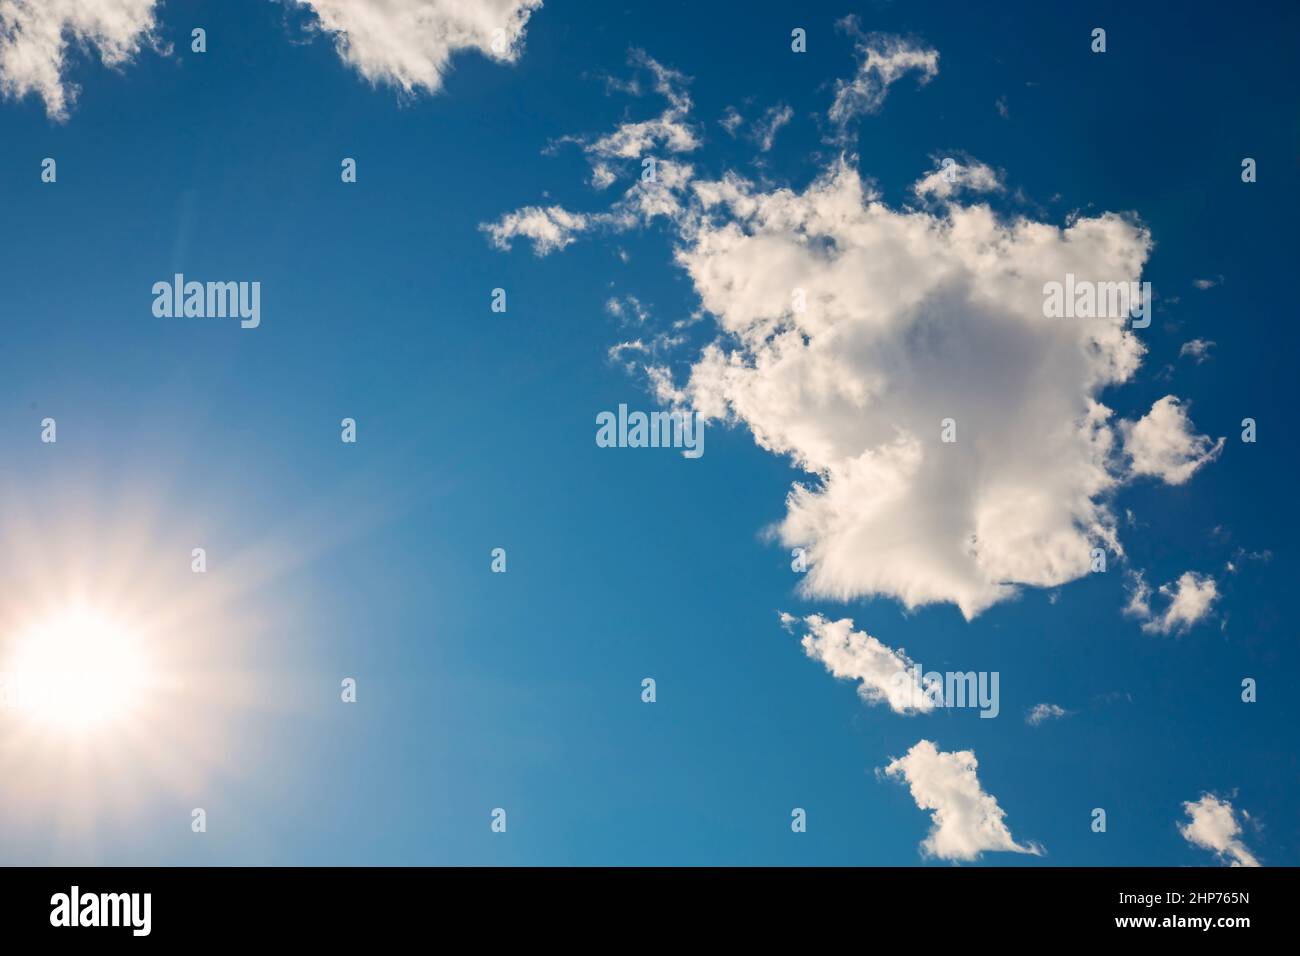 nuages blancs dans un ciel bleu clair.concept de magasin virtuel Banque D'Images